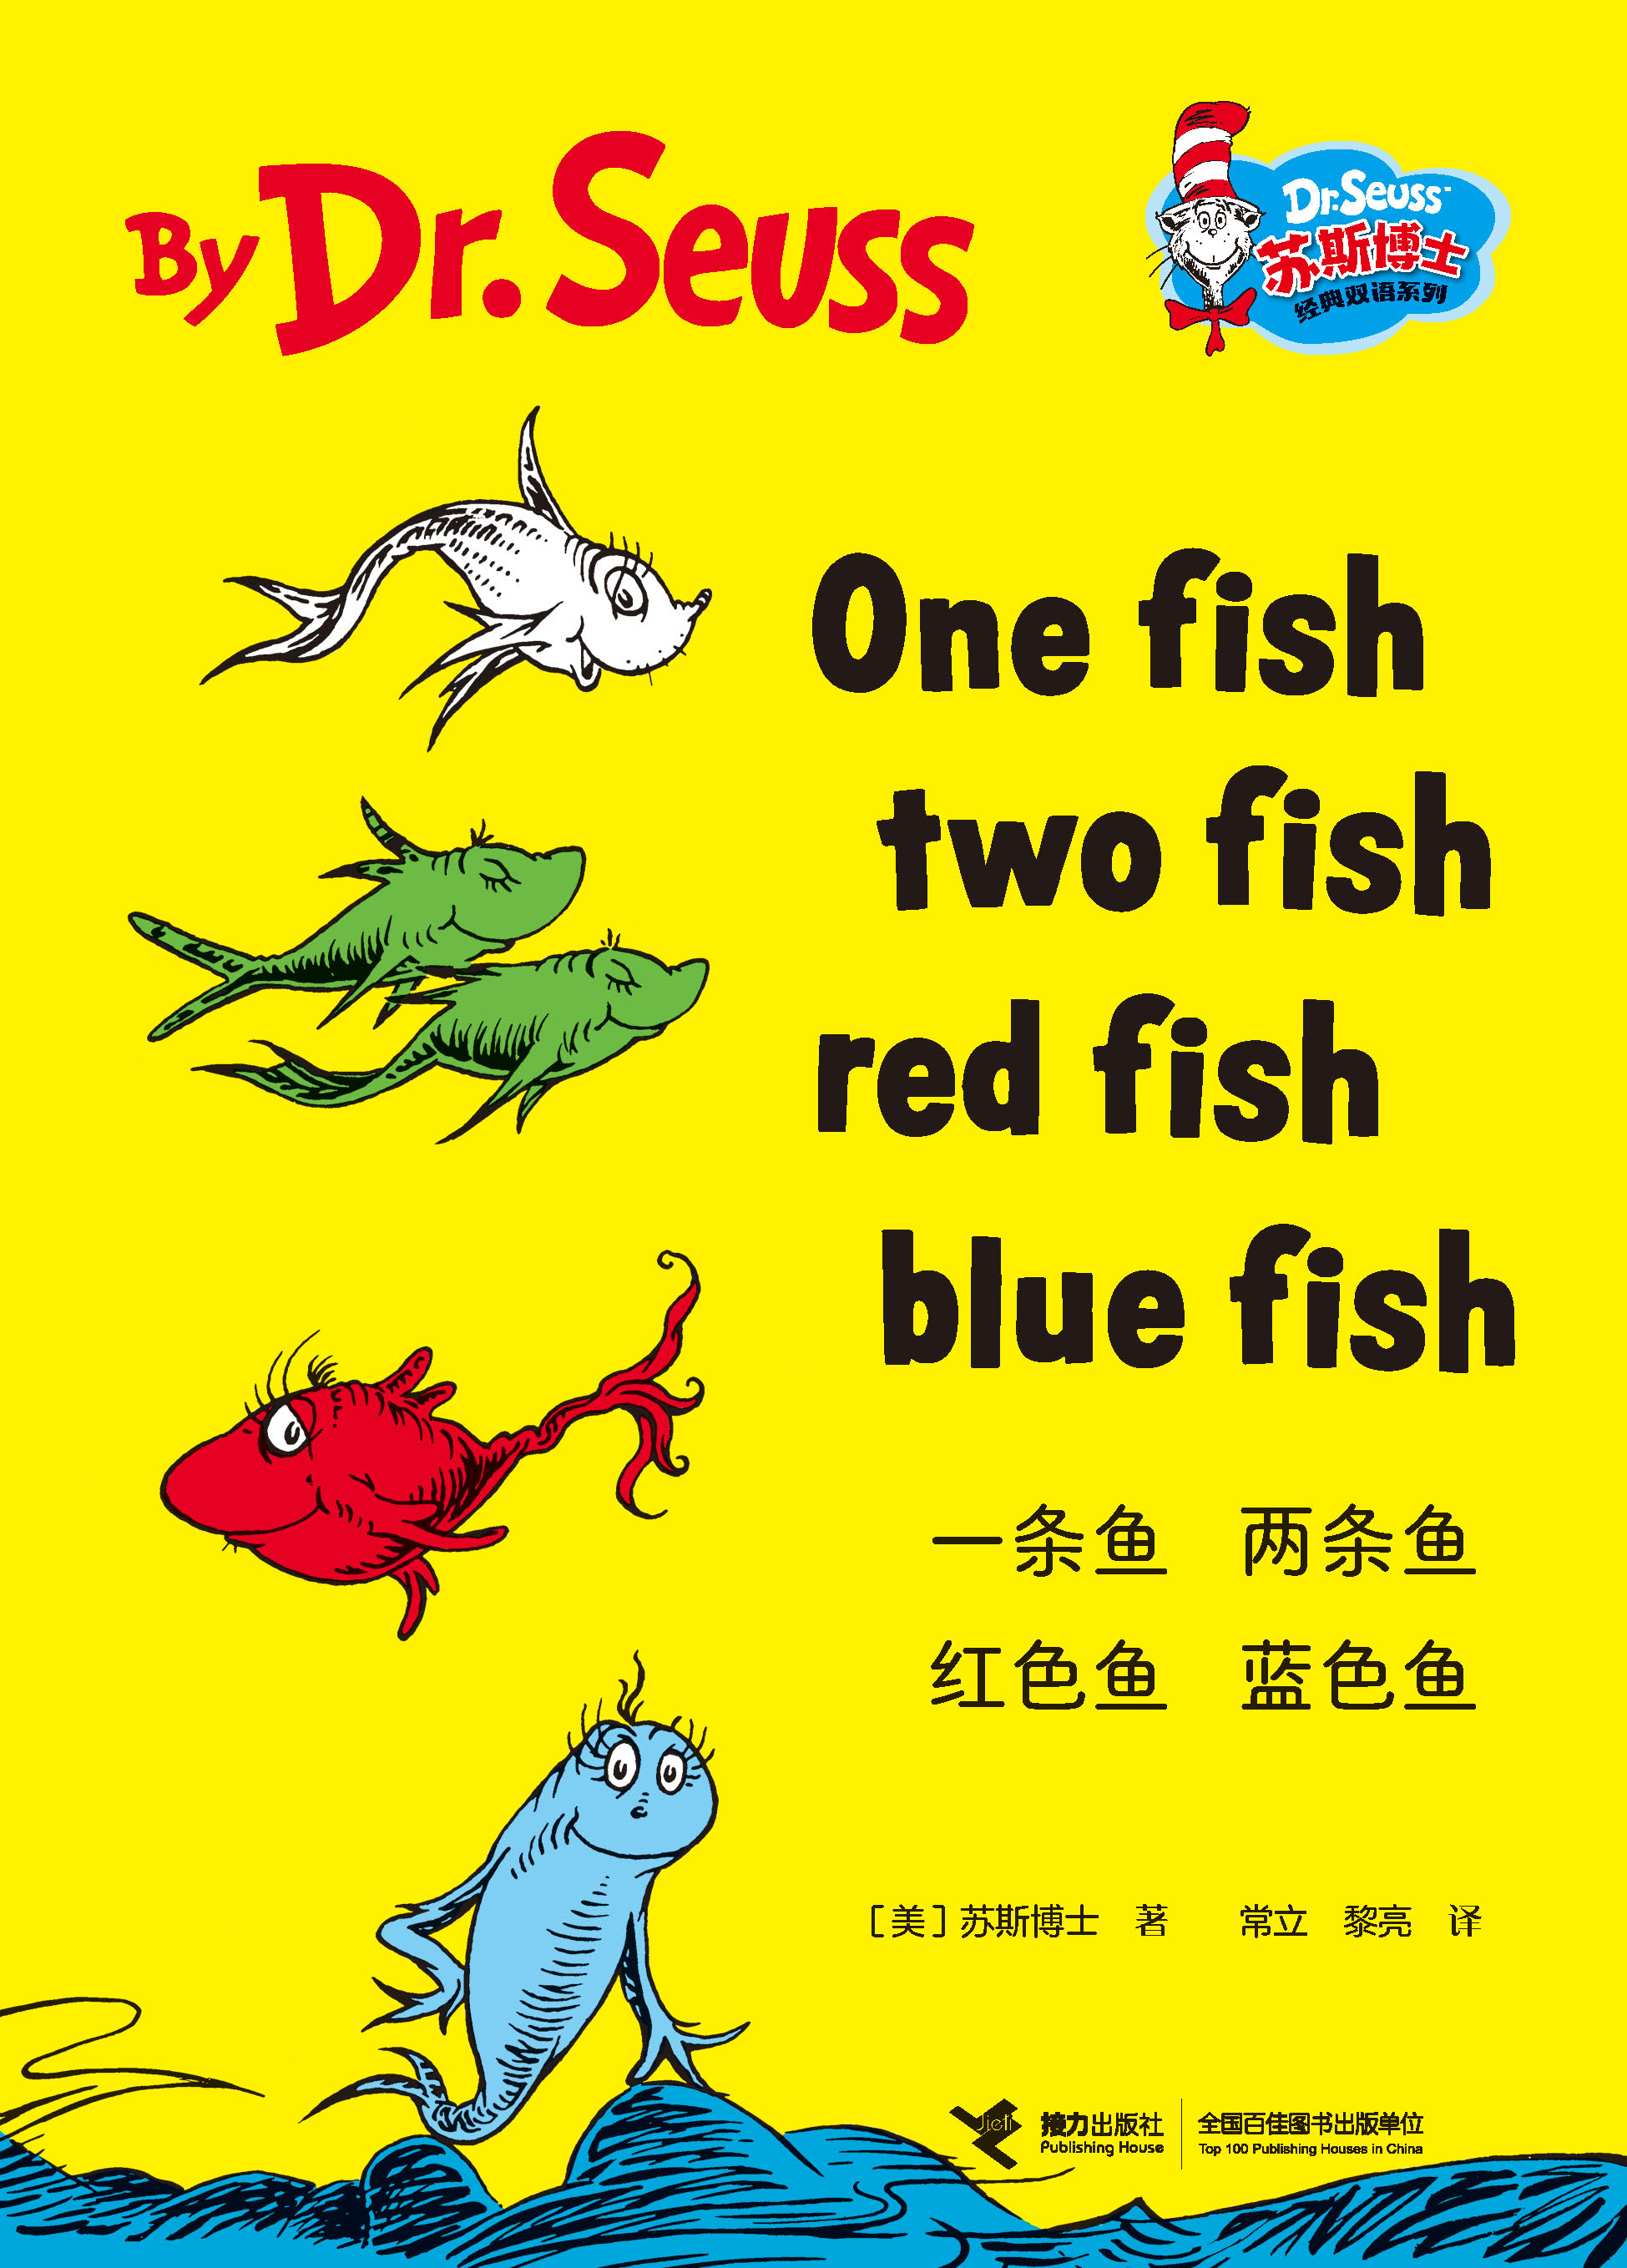 苏斯博士经典双语系列:一条鱼 两条鱼 红色鱼 蓝色鱼：汉英对照